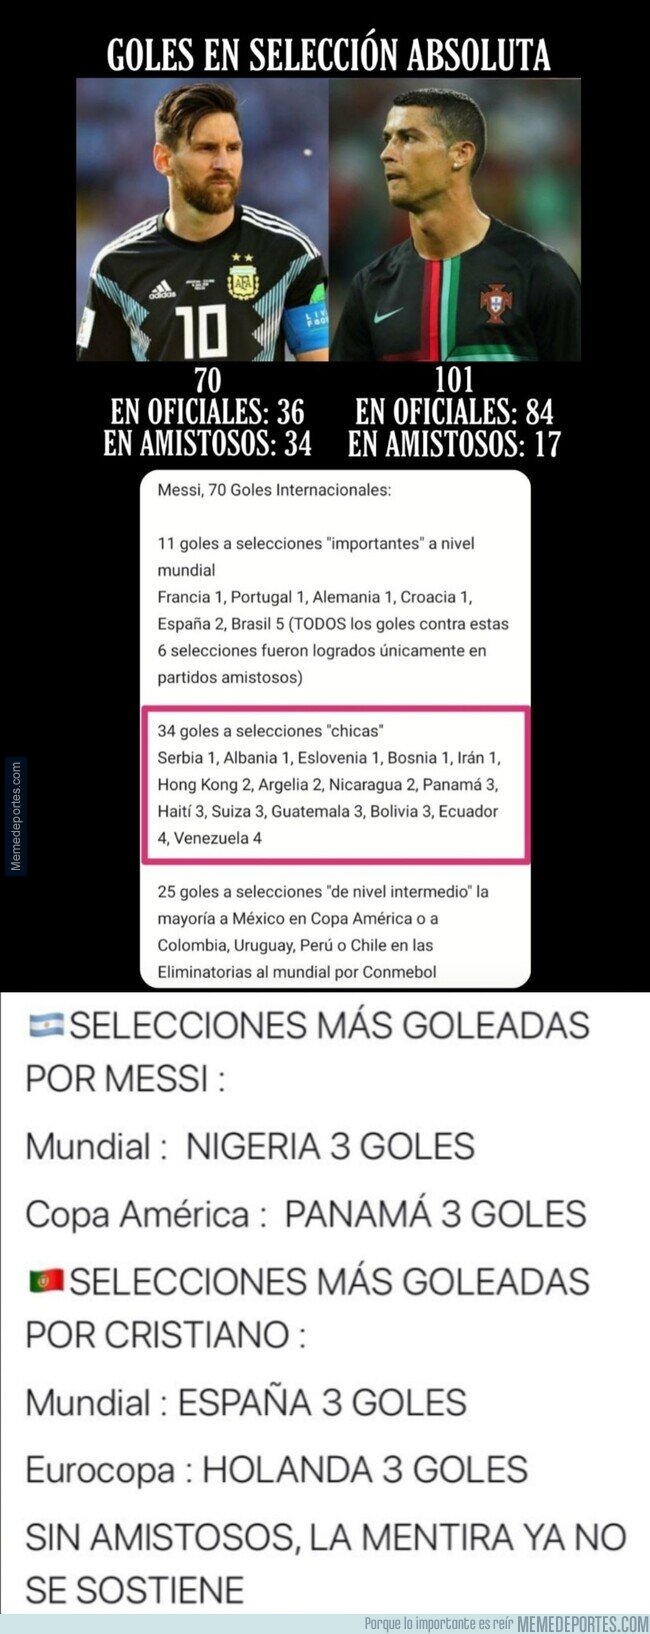 1115389 - Muchas risas en las redes sociales por los tipos de partidos en los que Messi marca y como serían sus estadísticas de no existir amistosos